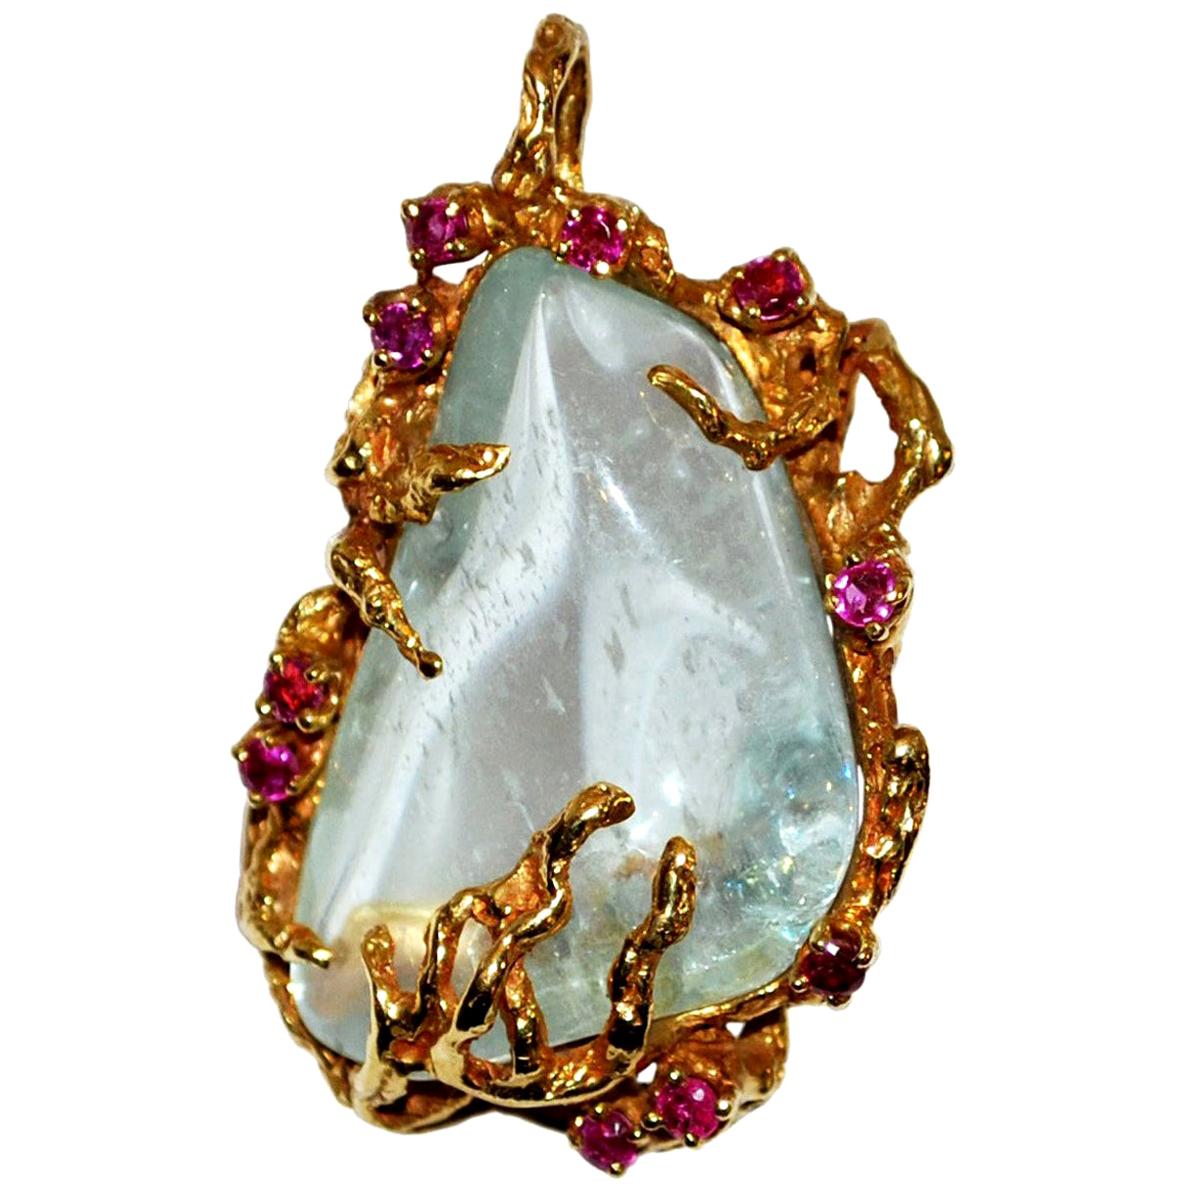 Arthur King Jewelry Pendentif vintage en or 18 carats avec quartz et rubis, c. 1960